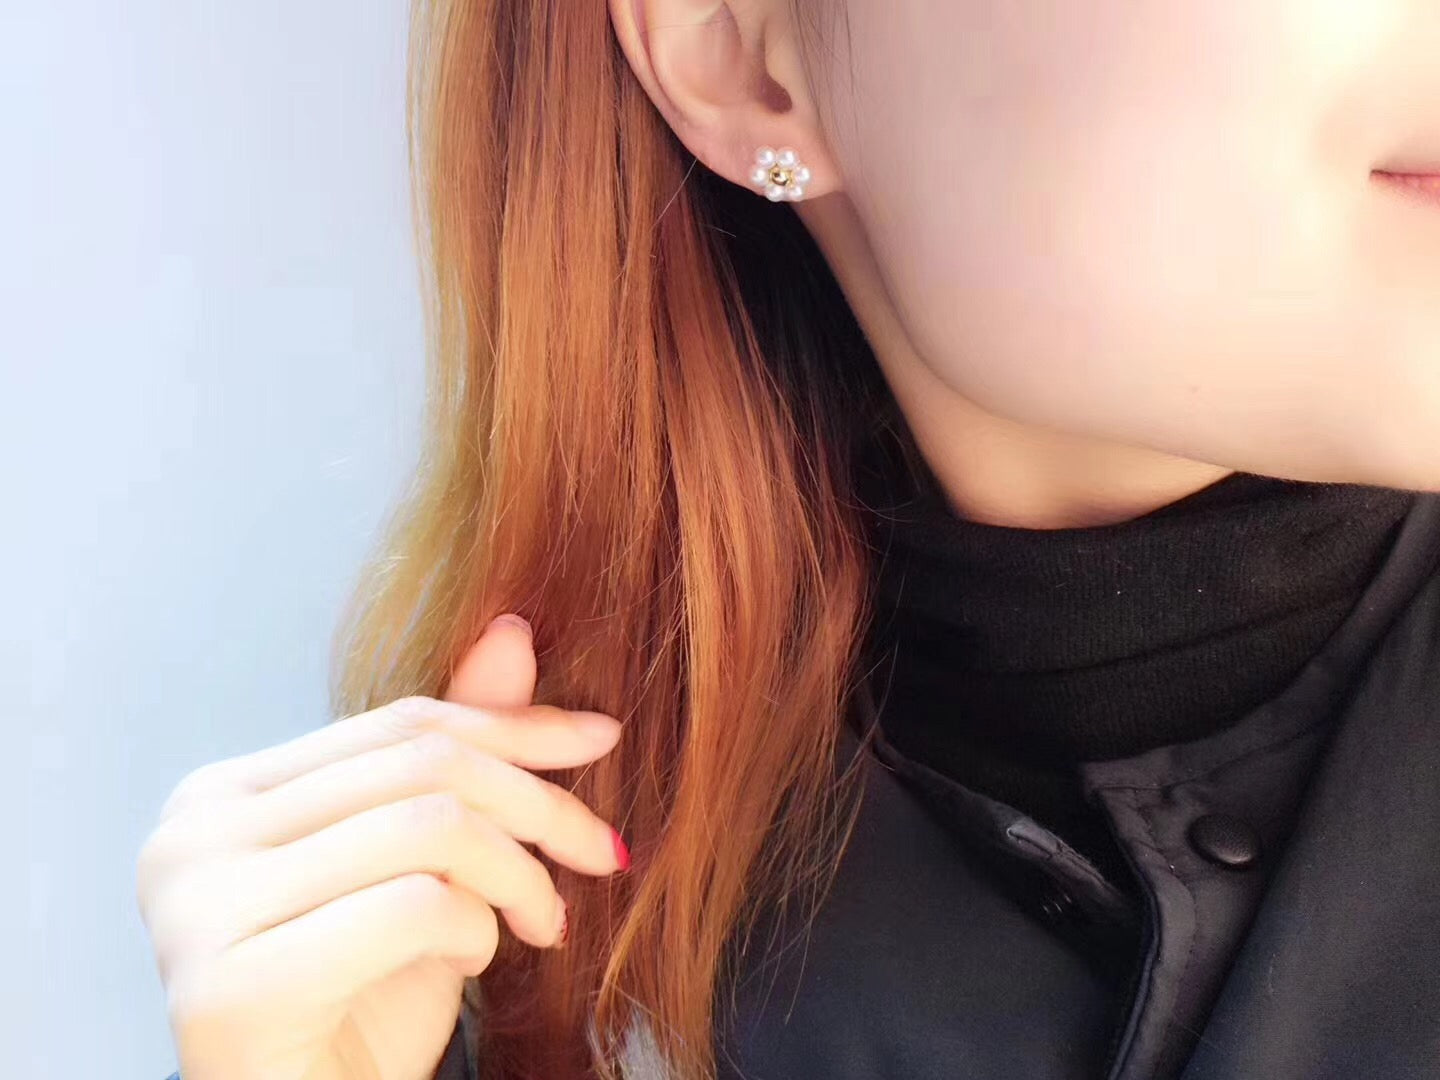 6-Pearl Flower Studs Earrings Design A